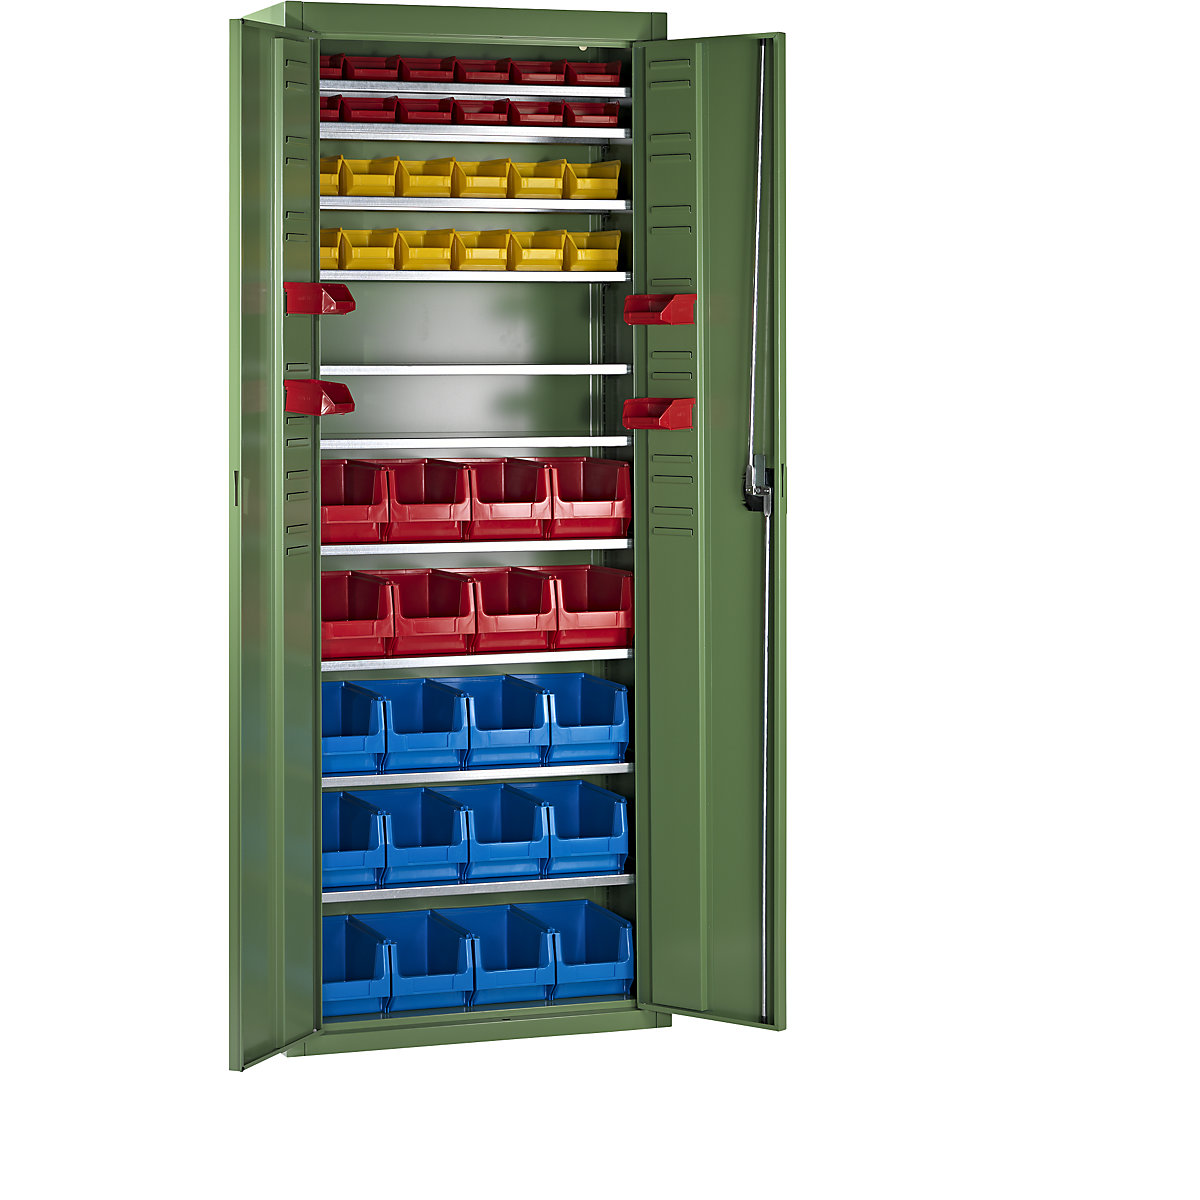 Skladišni ormar s otvorenim skladišnim kutijama – mauser, VxŠxD 1740 x 680 x 280 mm, 48 kutija, u jednoj boji, u rezeda zelenoj boji, od 3 kom.-4